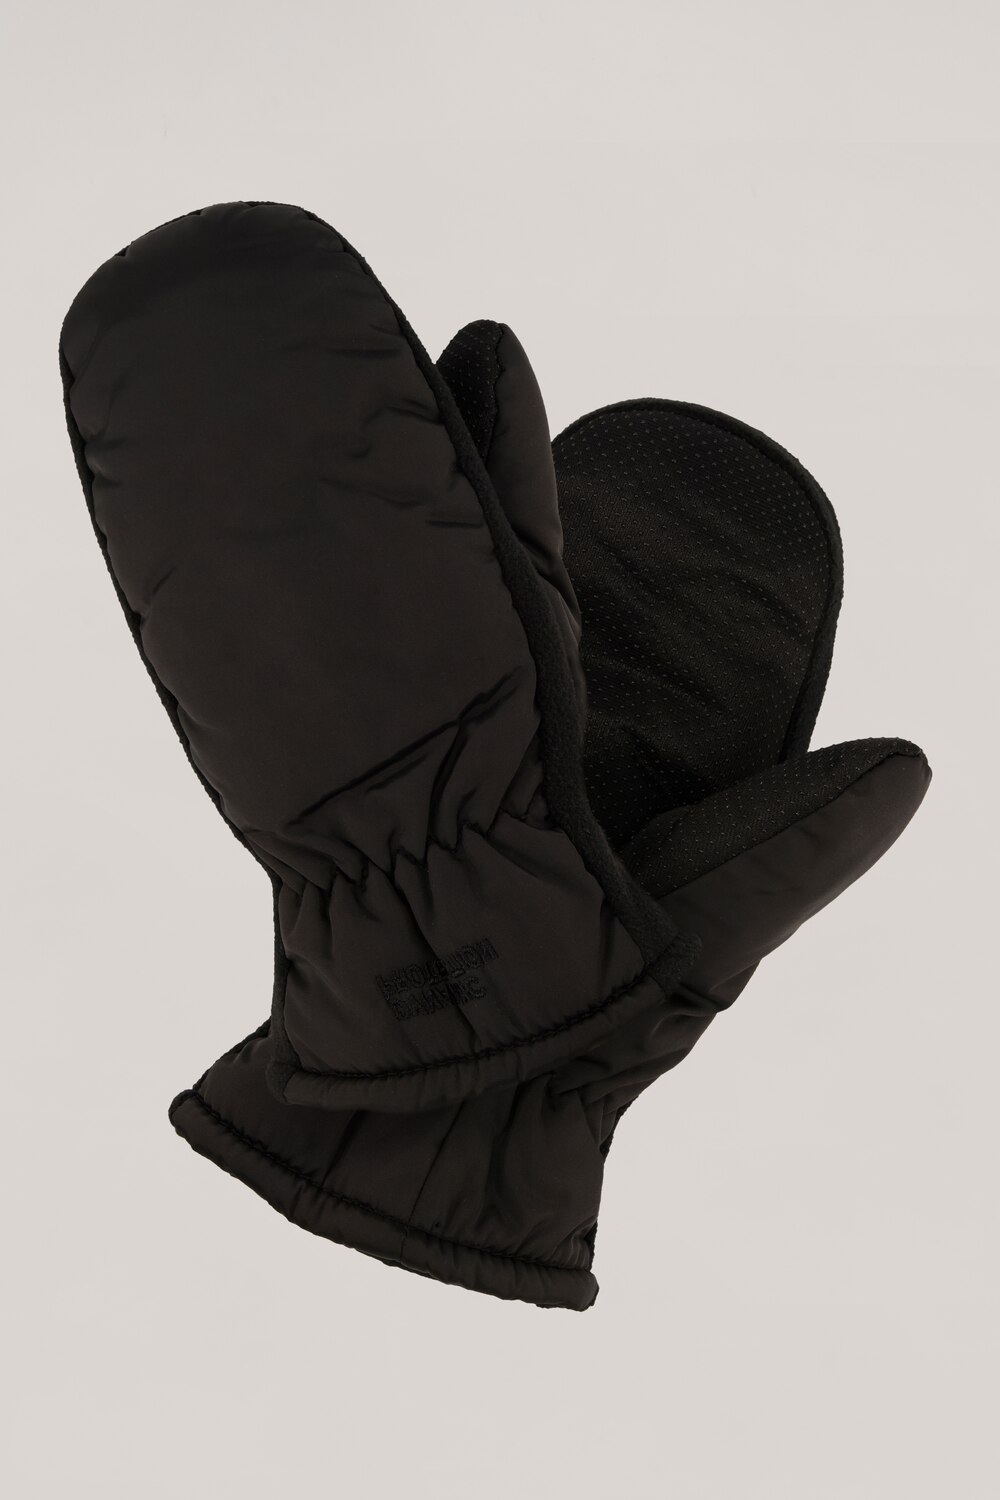 Grote Maten Doorstiksel-handschoen, Dames, zwart, Maat: 1=42-48, Polyester, Ulla Popken